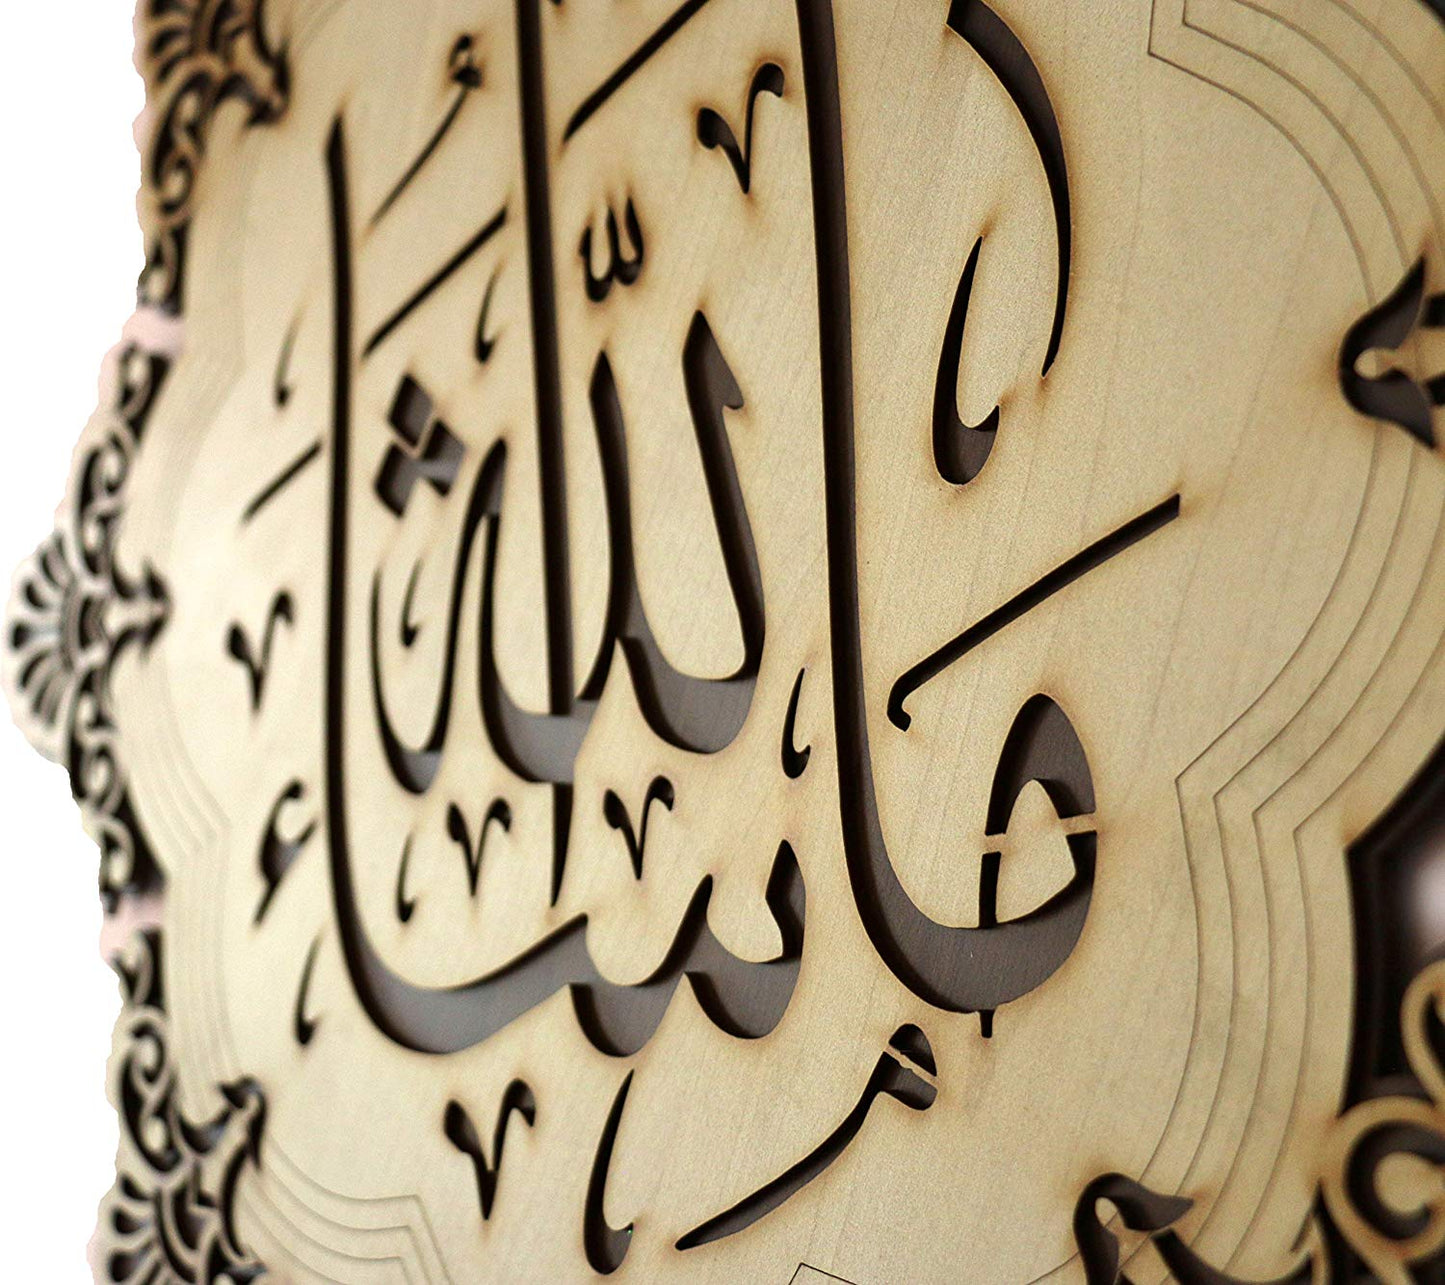 Islamic Wall Frame Wooden Home DÉCOR Wall Hanging KALMA E PAK “laa ilaahah illa allaah muhammadun rasool ullaah”| MASHALLAH| HAZA MIN FAZLI RABBI 18.5 INCH by 18.5 INCHES